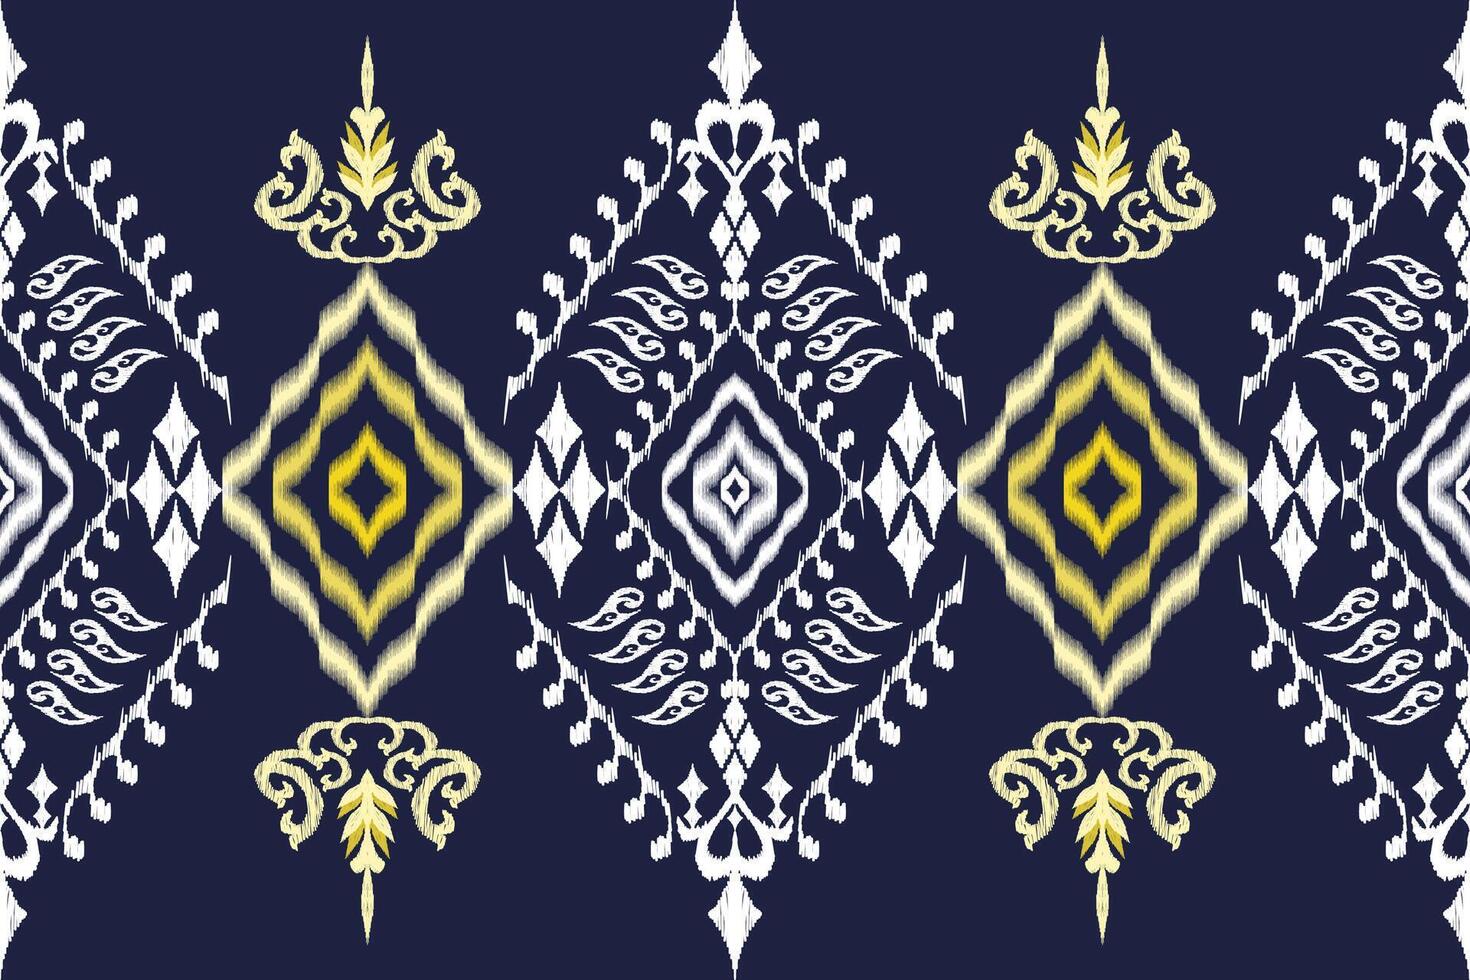 étnico figura asteca bordado estilo.geométrico ikat oriental tradicional arte padrão.design para étnico plano de fundo,papel de parede,moda,vestuário,embrulho,tecido,elemento,sarong,gráfico ilustração. vetor